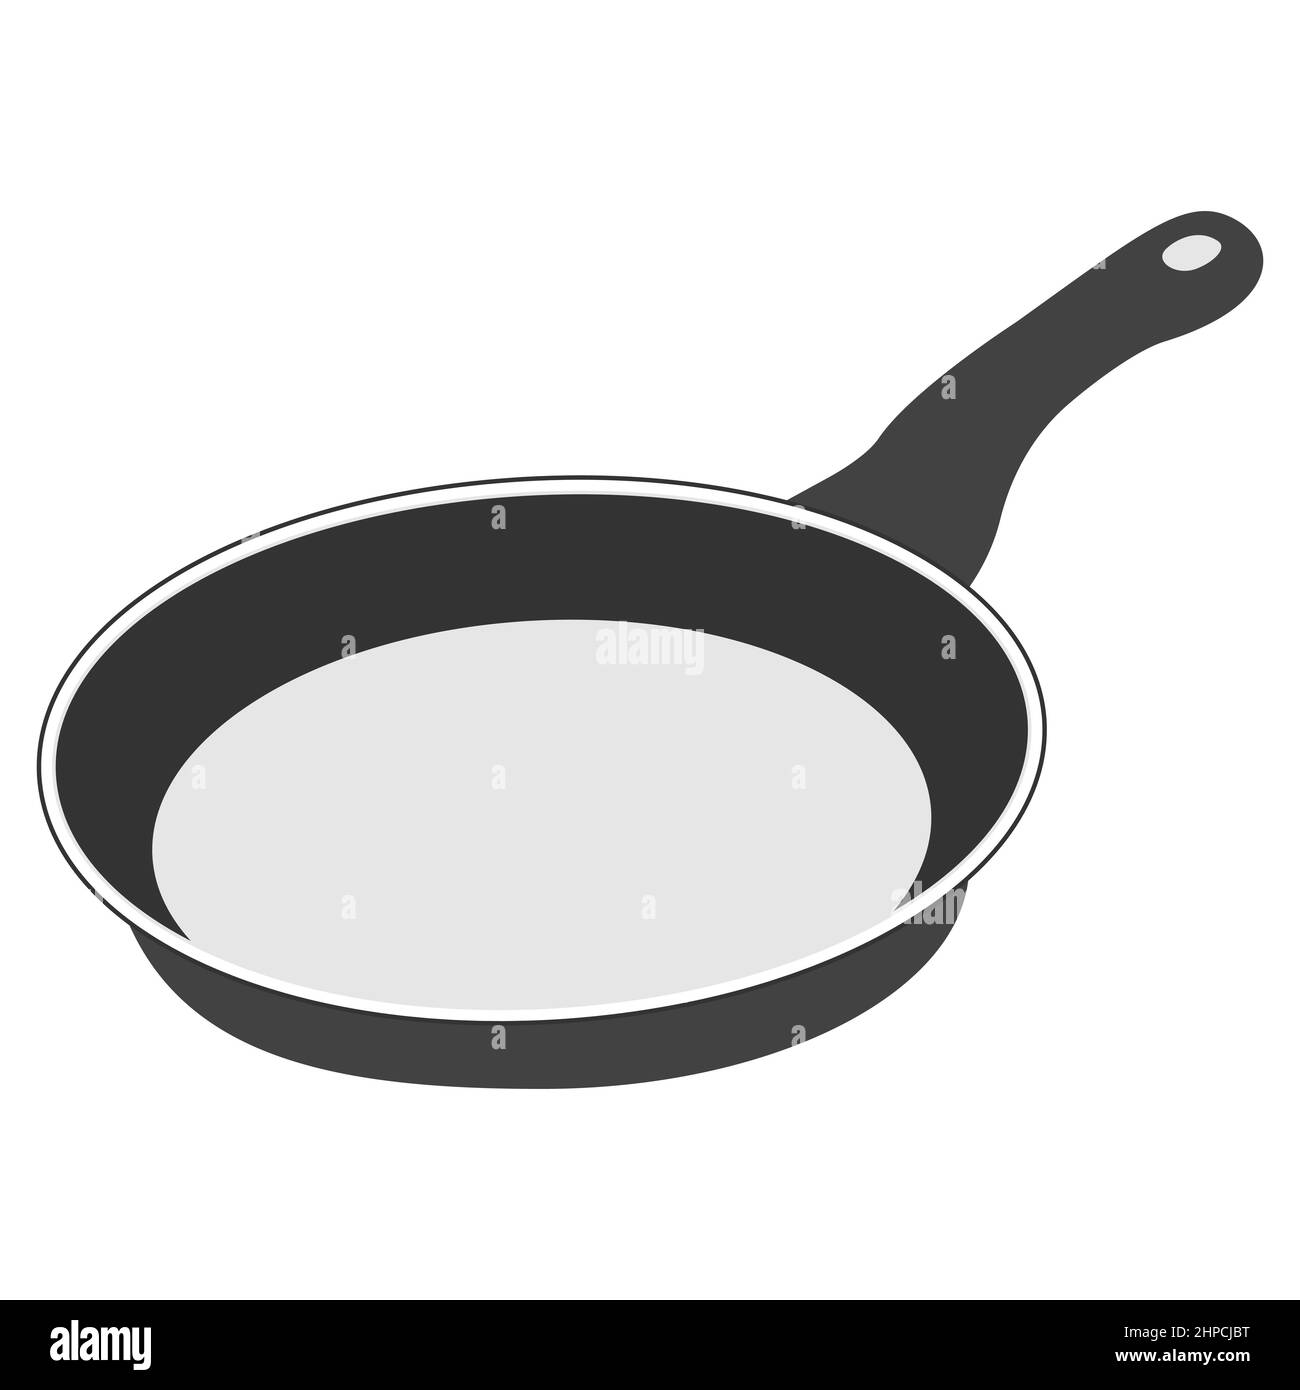 Bratpfanne isoliert auf weißem Hintergrund. Bratpfanne. Silhouette-Symbol. Küchenutensilien zum Kochen, Icon. Vektorgrafik Stock Vektor